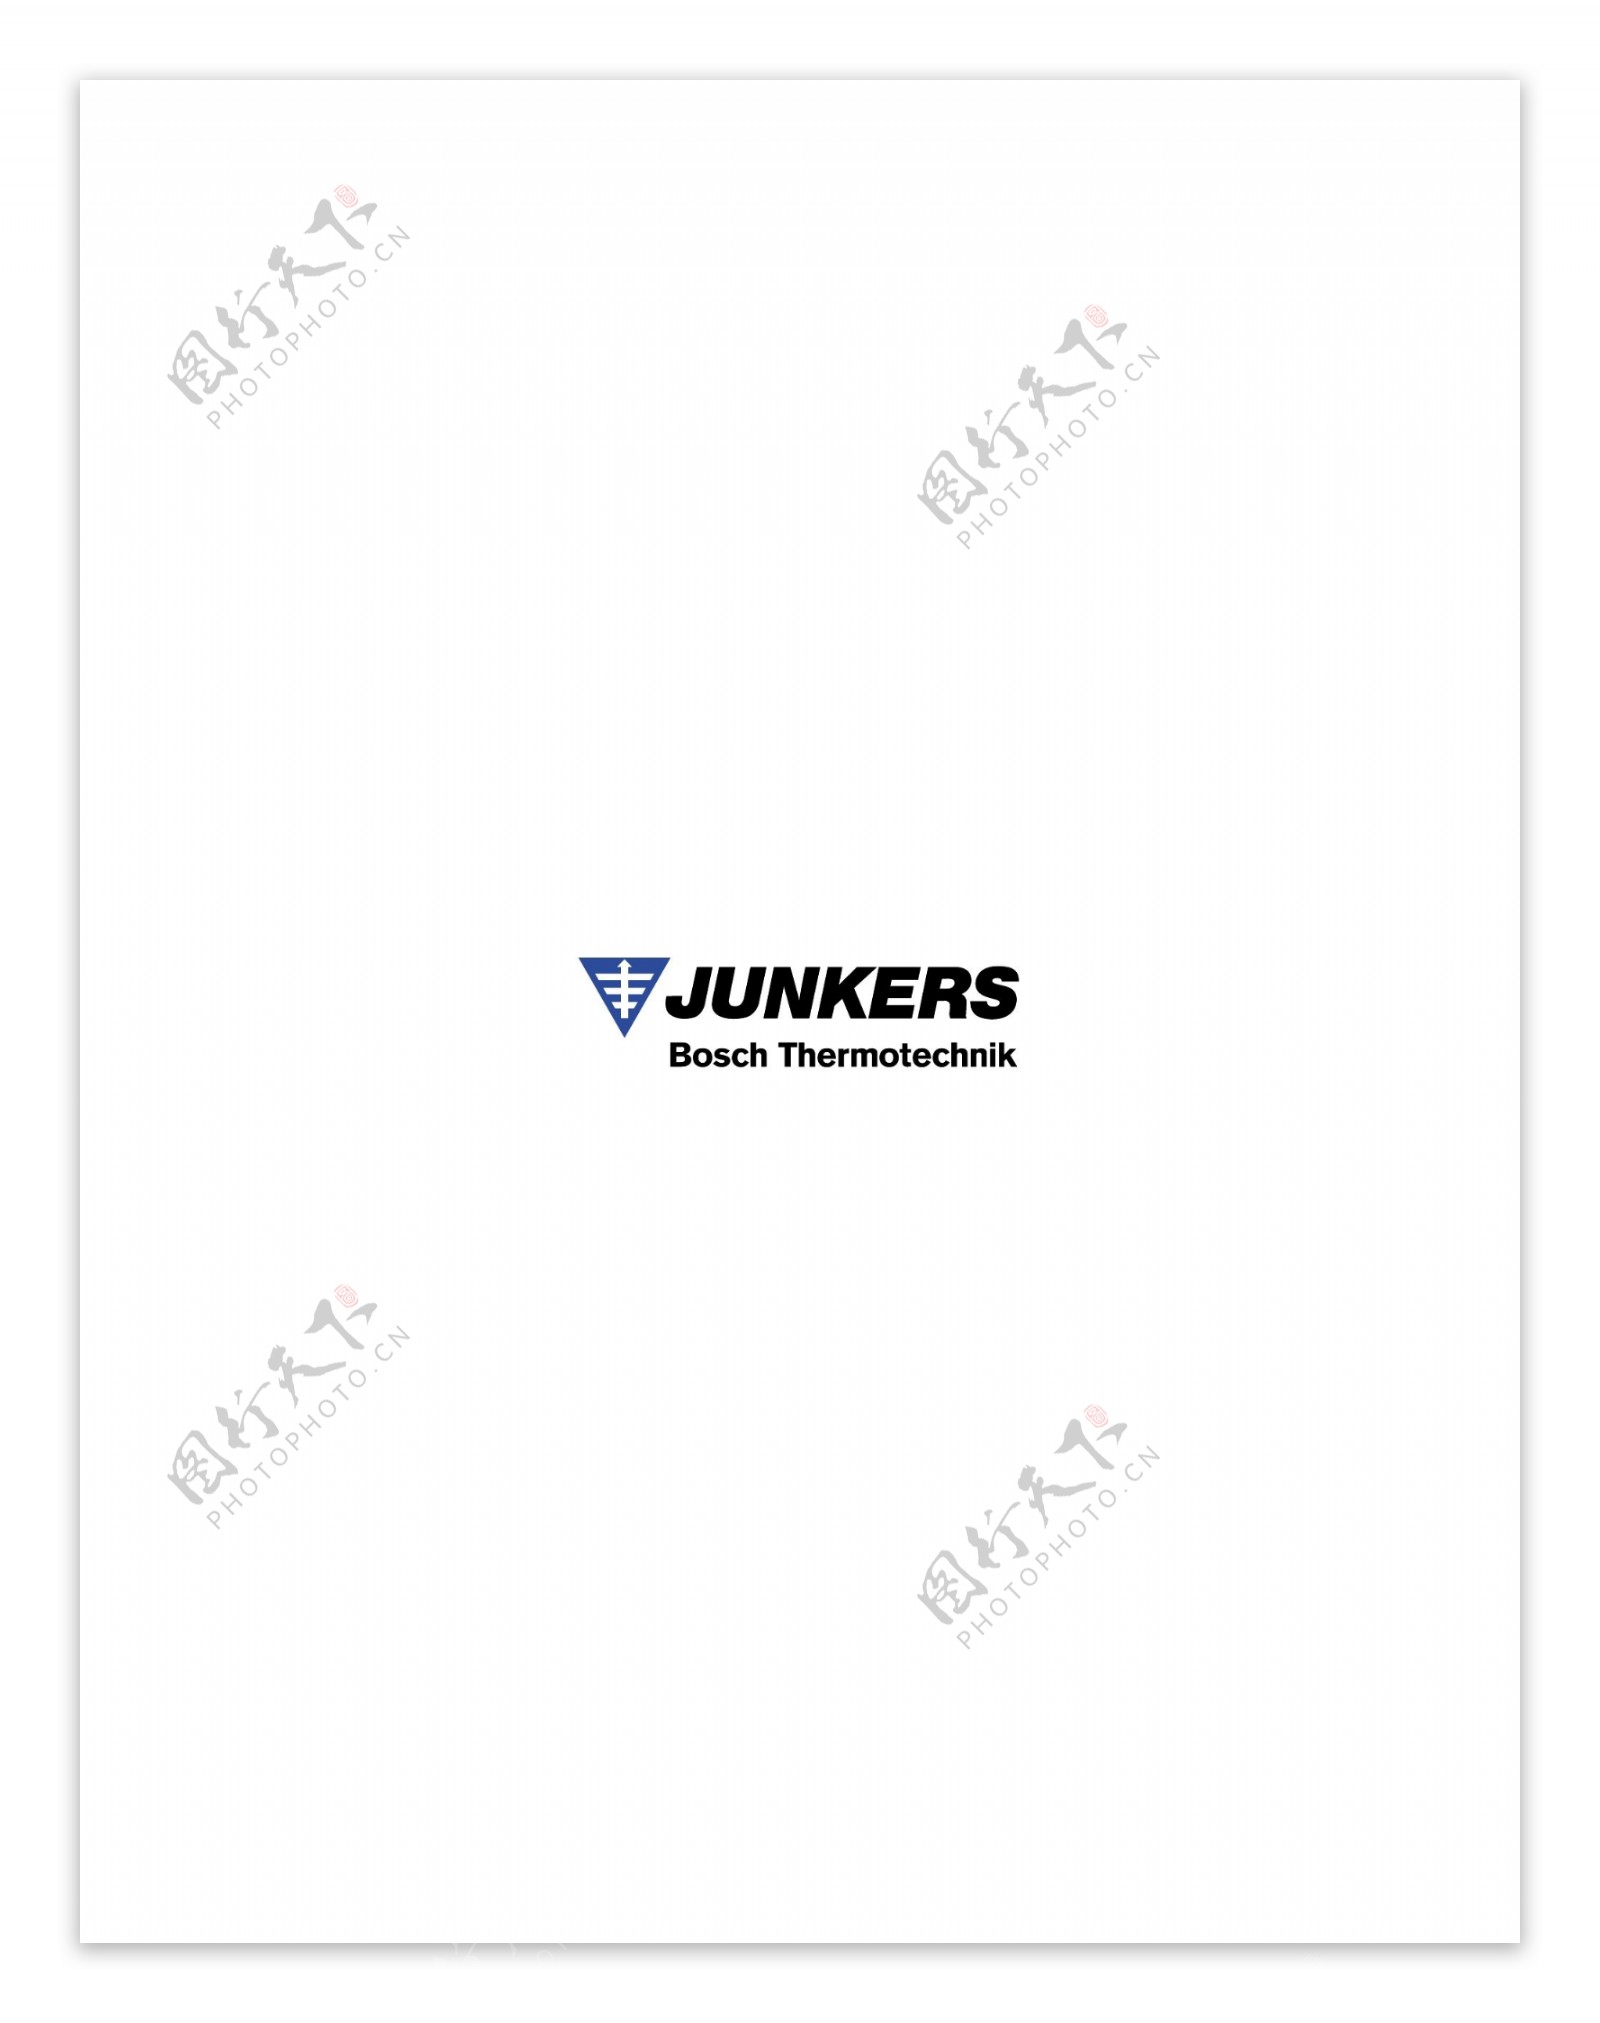 Junkerslogo设计欣赏足球和IT公司标志Junkers下载标志设计欣赏